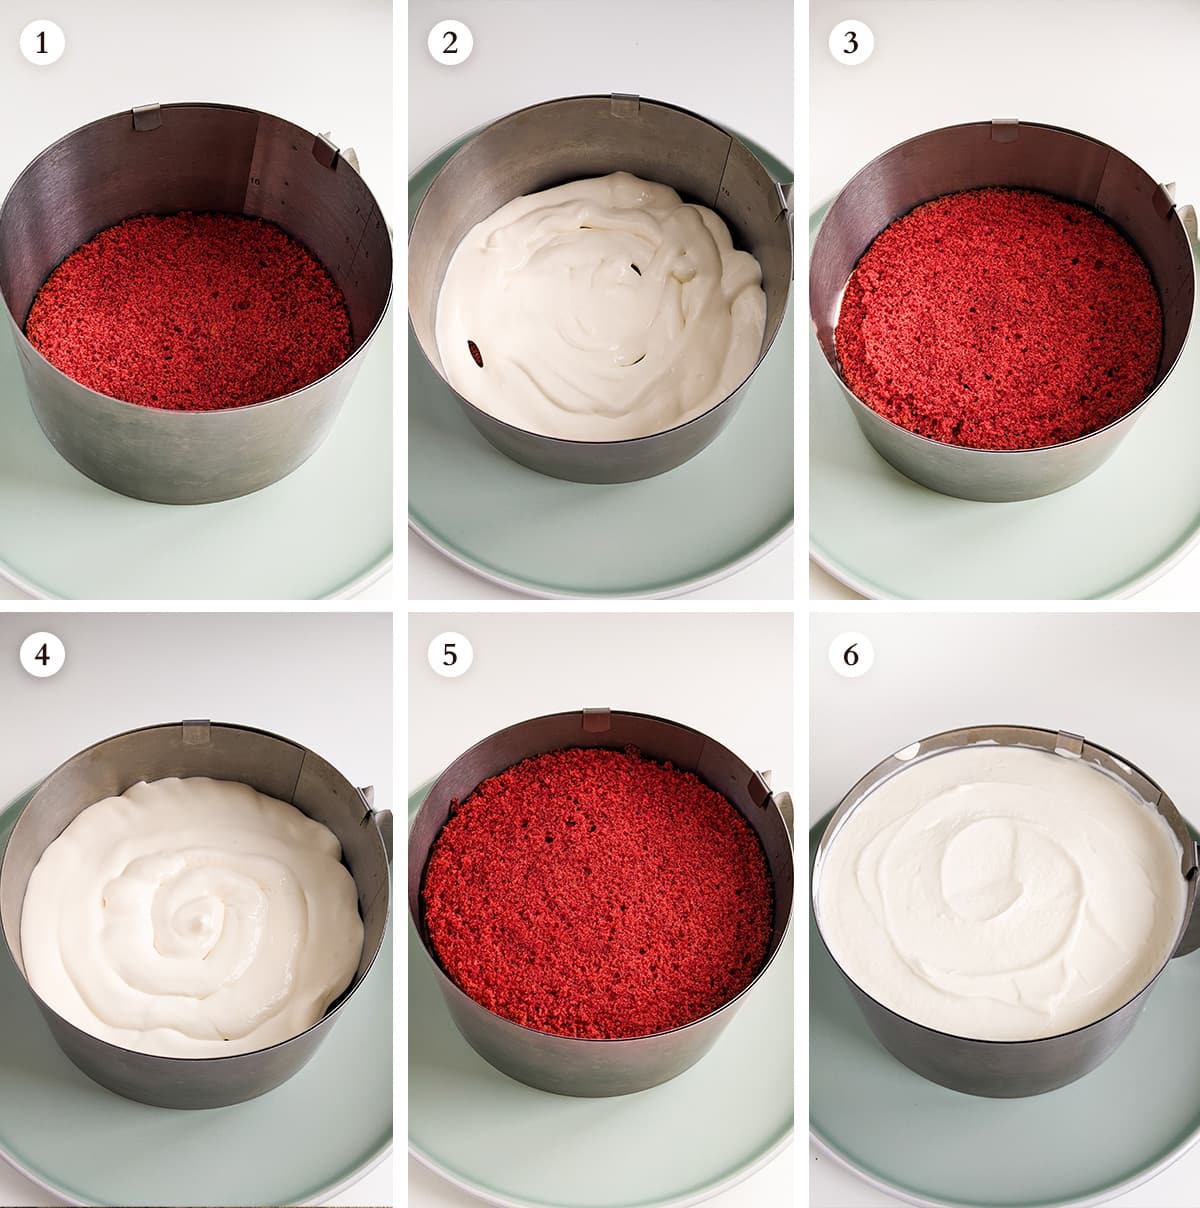 6 steps on how to assemble the red velvet cake.